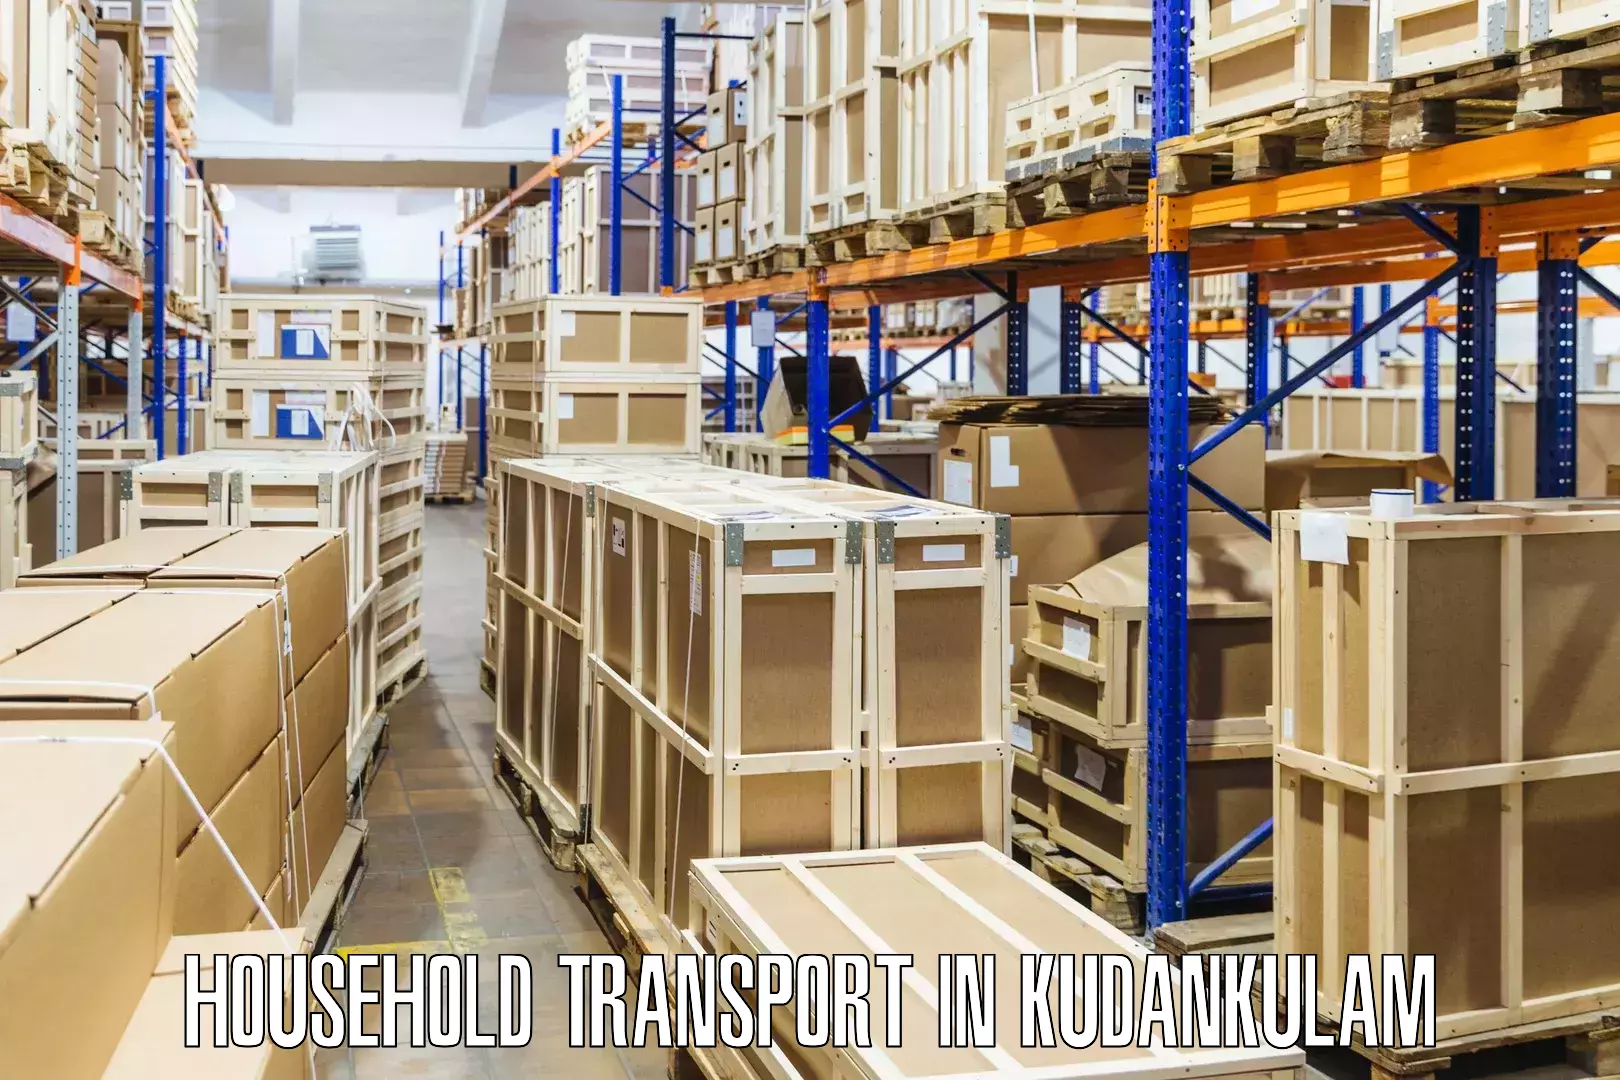 Expert household transport in Kudankulam